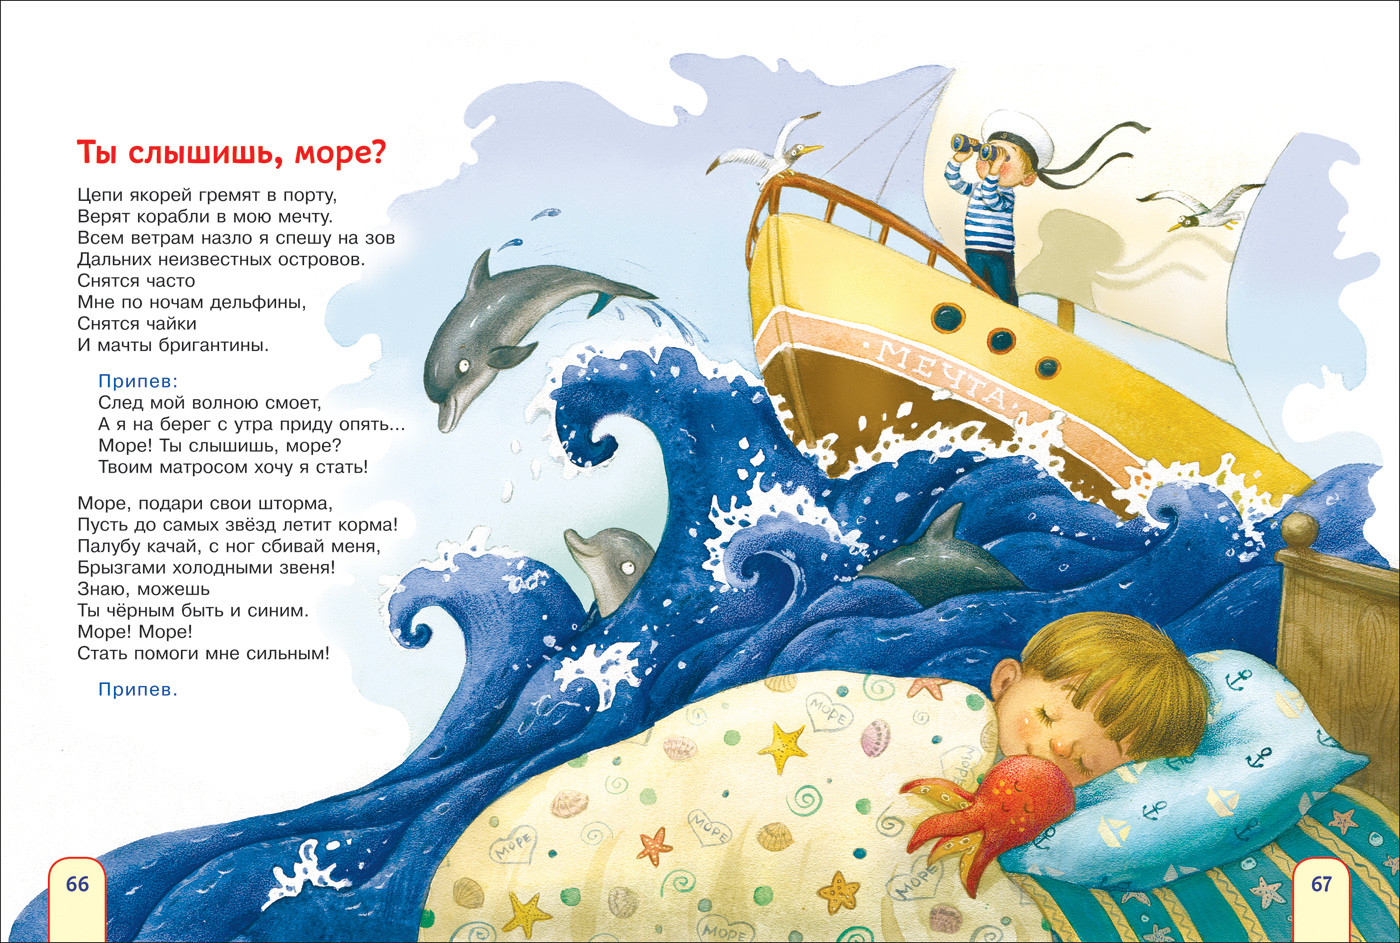 Твоим матросом хочу. Детская сказка про море книги. Детский стишок про море. Стихотворение про море для детей. Сказки про море для детей.